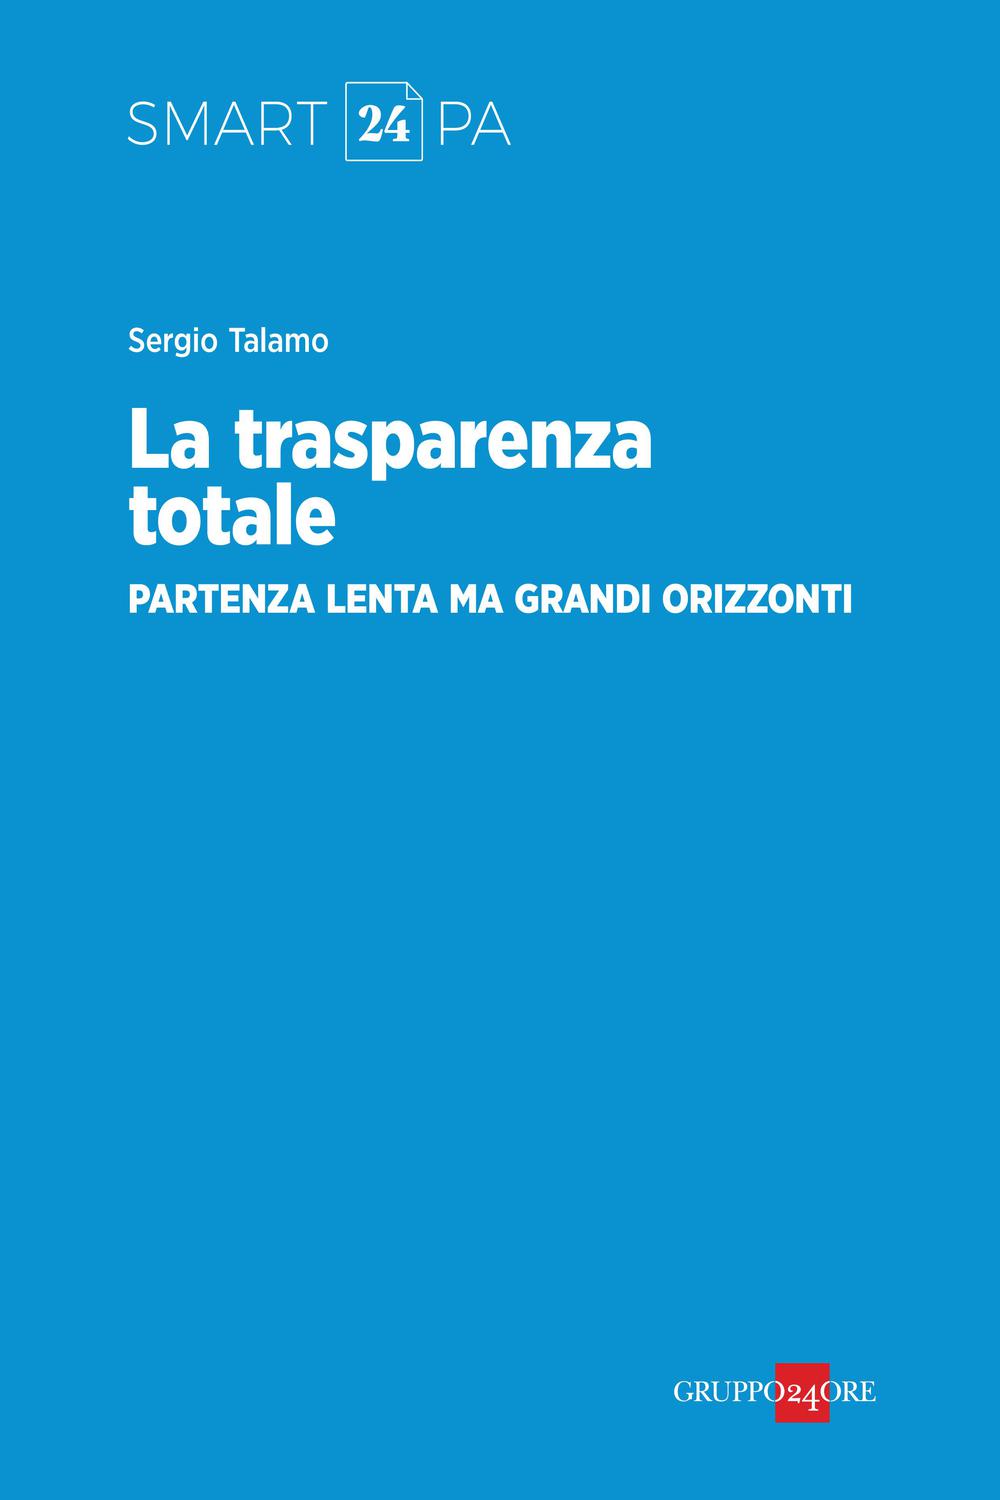 La trasparenza totale, partenza lenta ma grandi orizzonti - Sergio Sergio Talamo